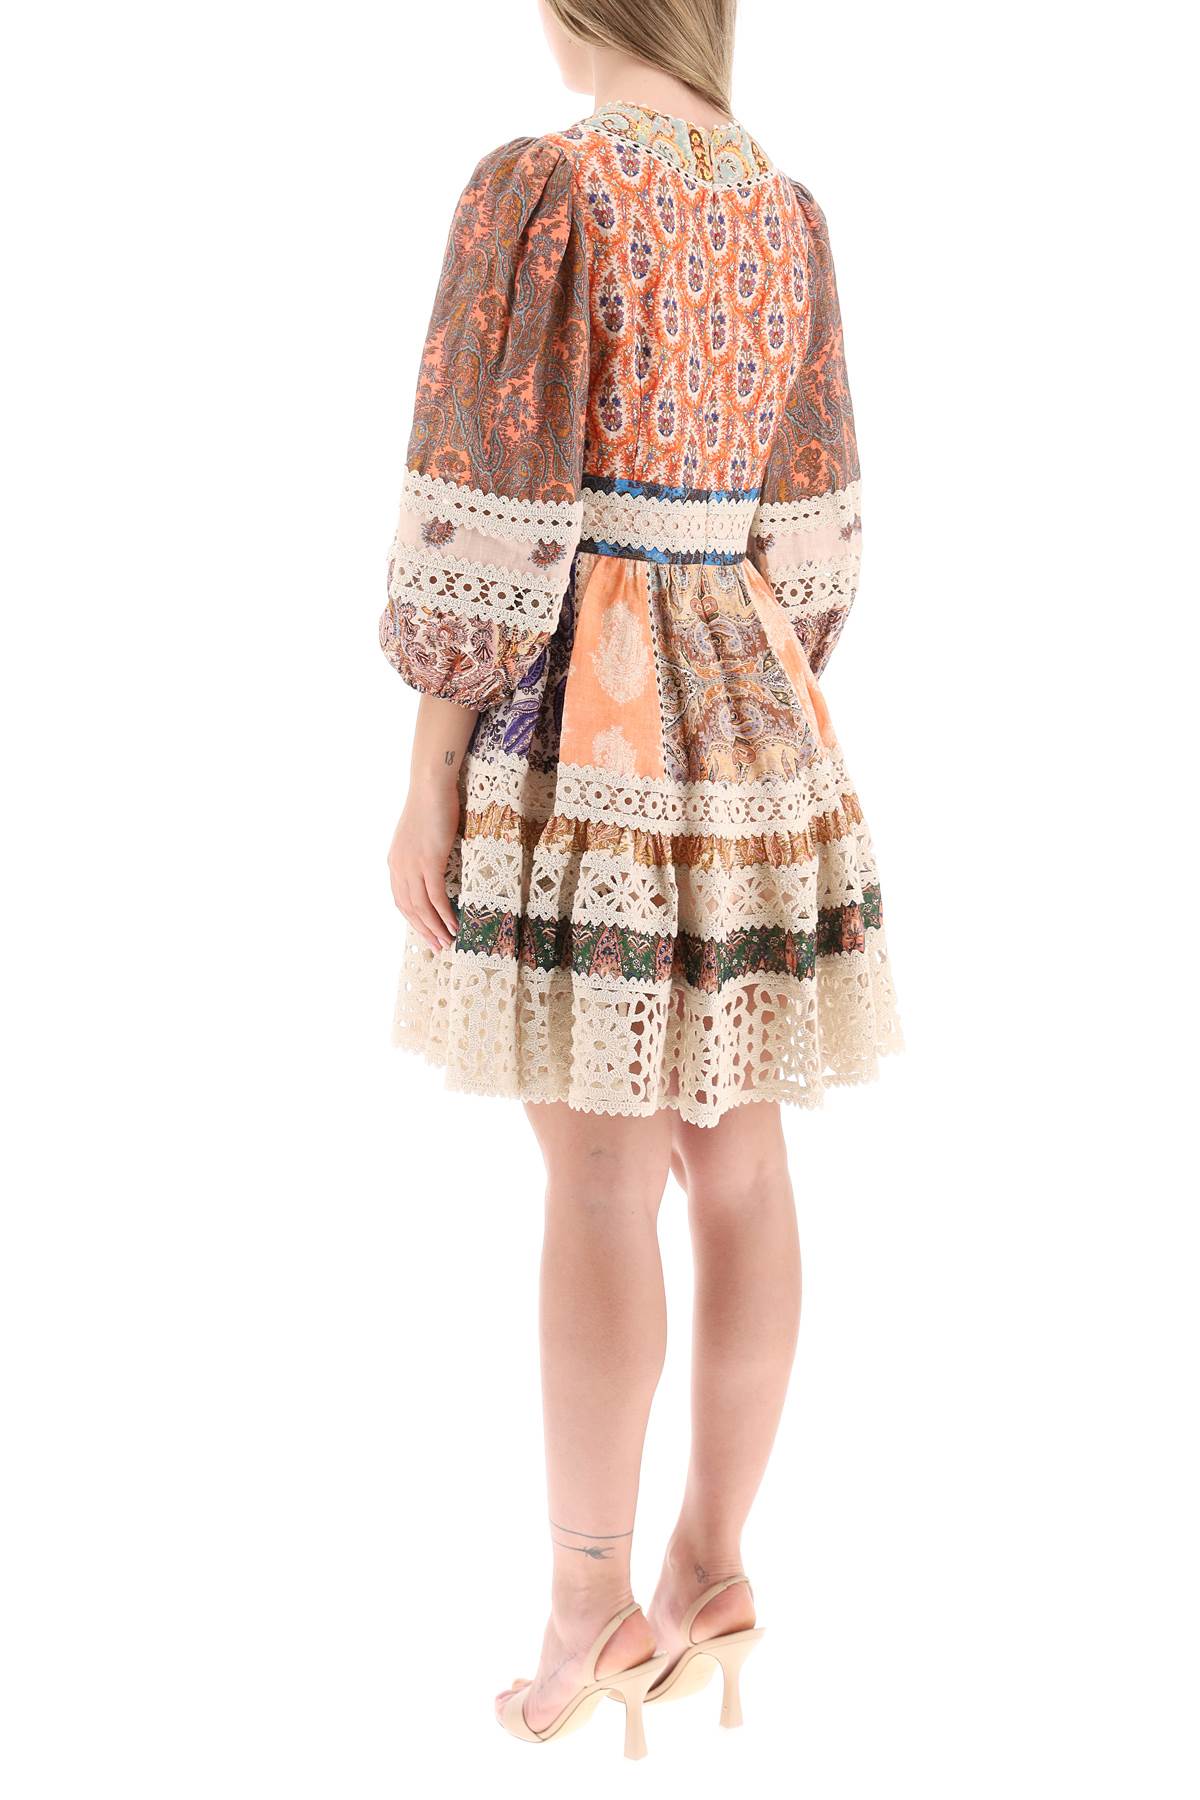 Bohemian Chic Mini Dress với Bộ Viền Đan và Mẫu Họa Tiết Paisley Toàn Thân